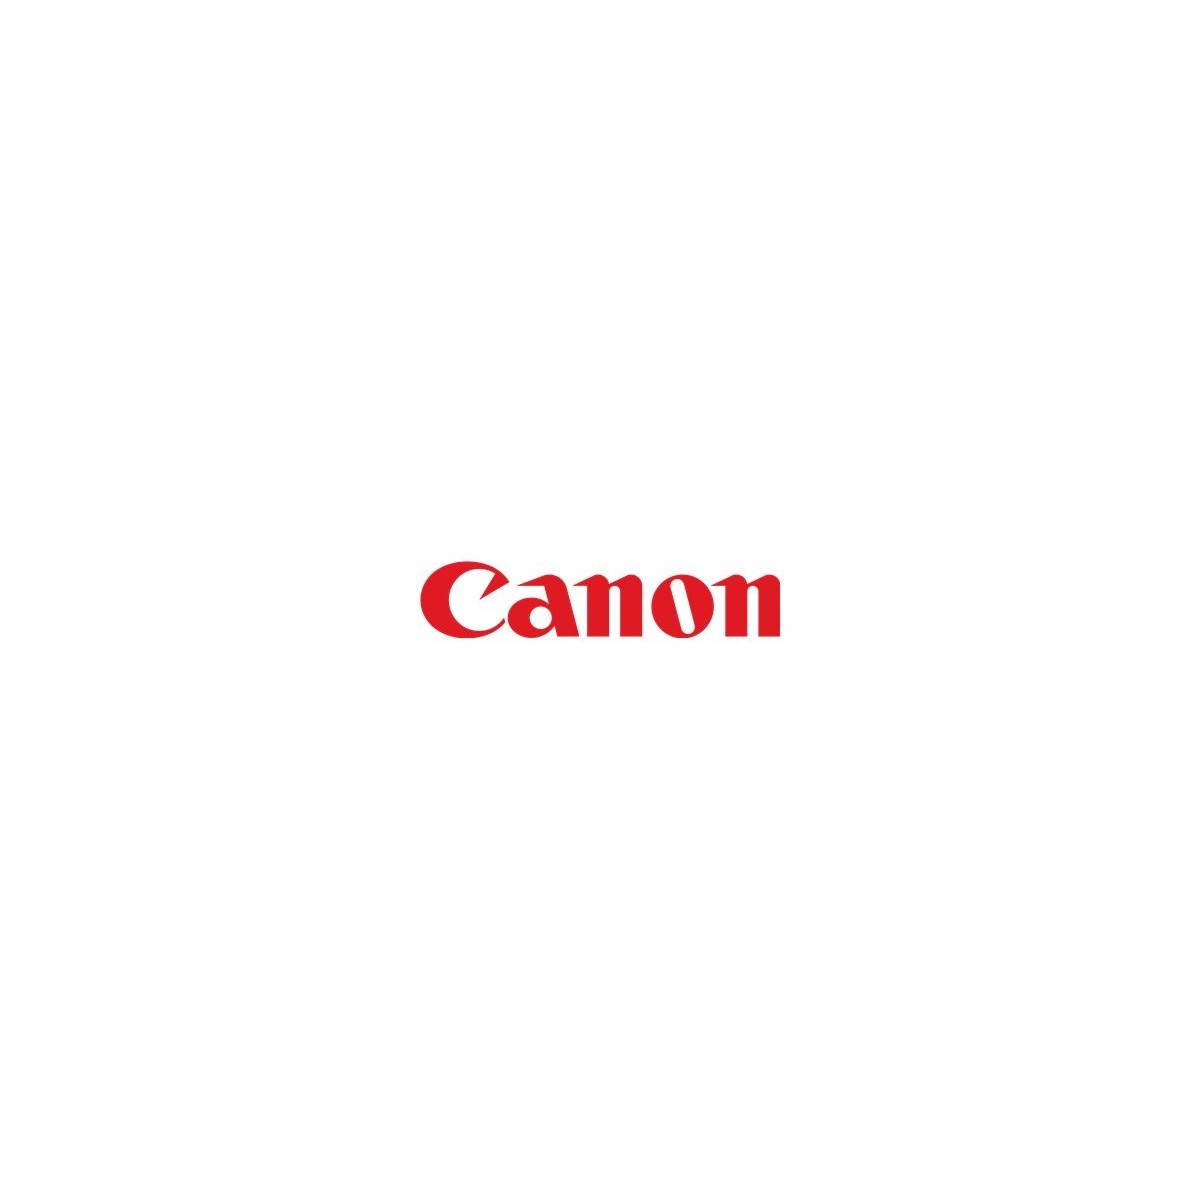 Canon 0256B002AA - Original - CLC5151 / CLC4141/ iRC4580i / iRC4080i - 60000 pages - Magenta